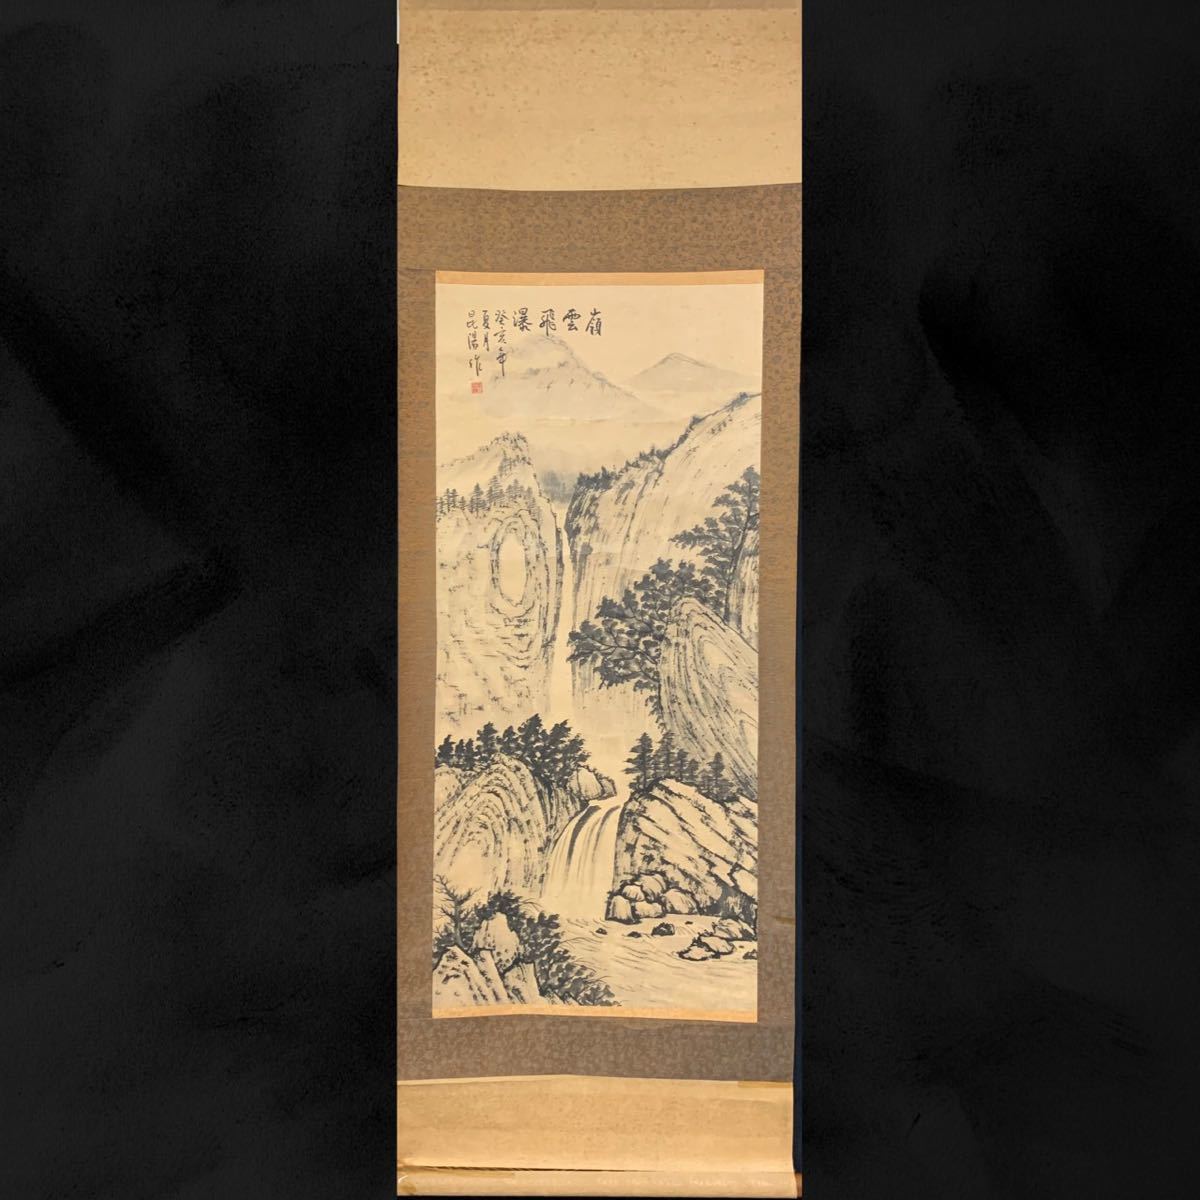 [副本] (Paku 62) 已铭刻, 科尼奥, 幛, 景观, 162 x 54 厘米, 中国, 艺术品, 绘画, 其他的